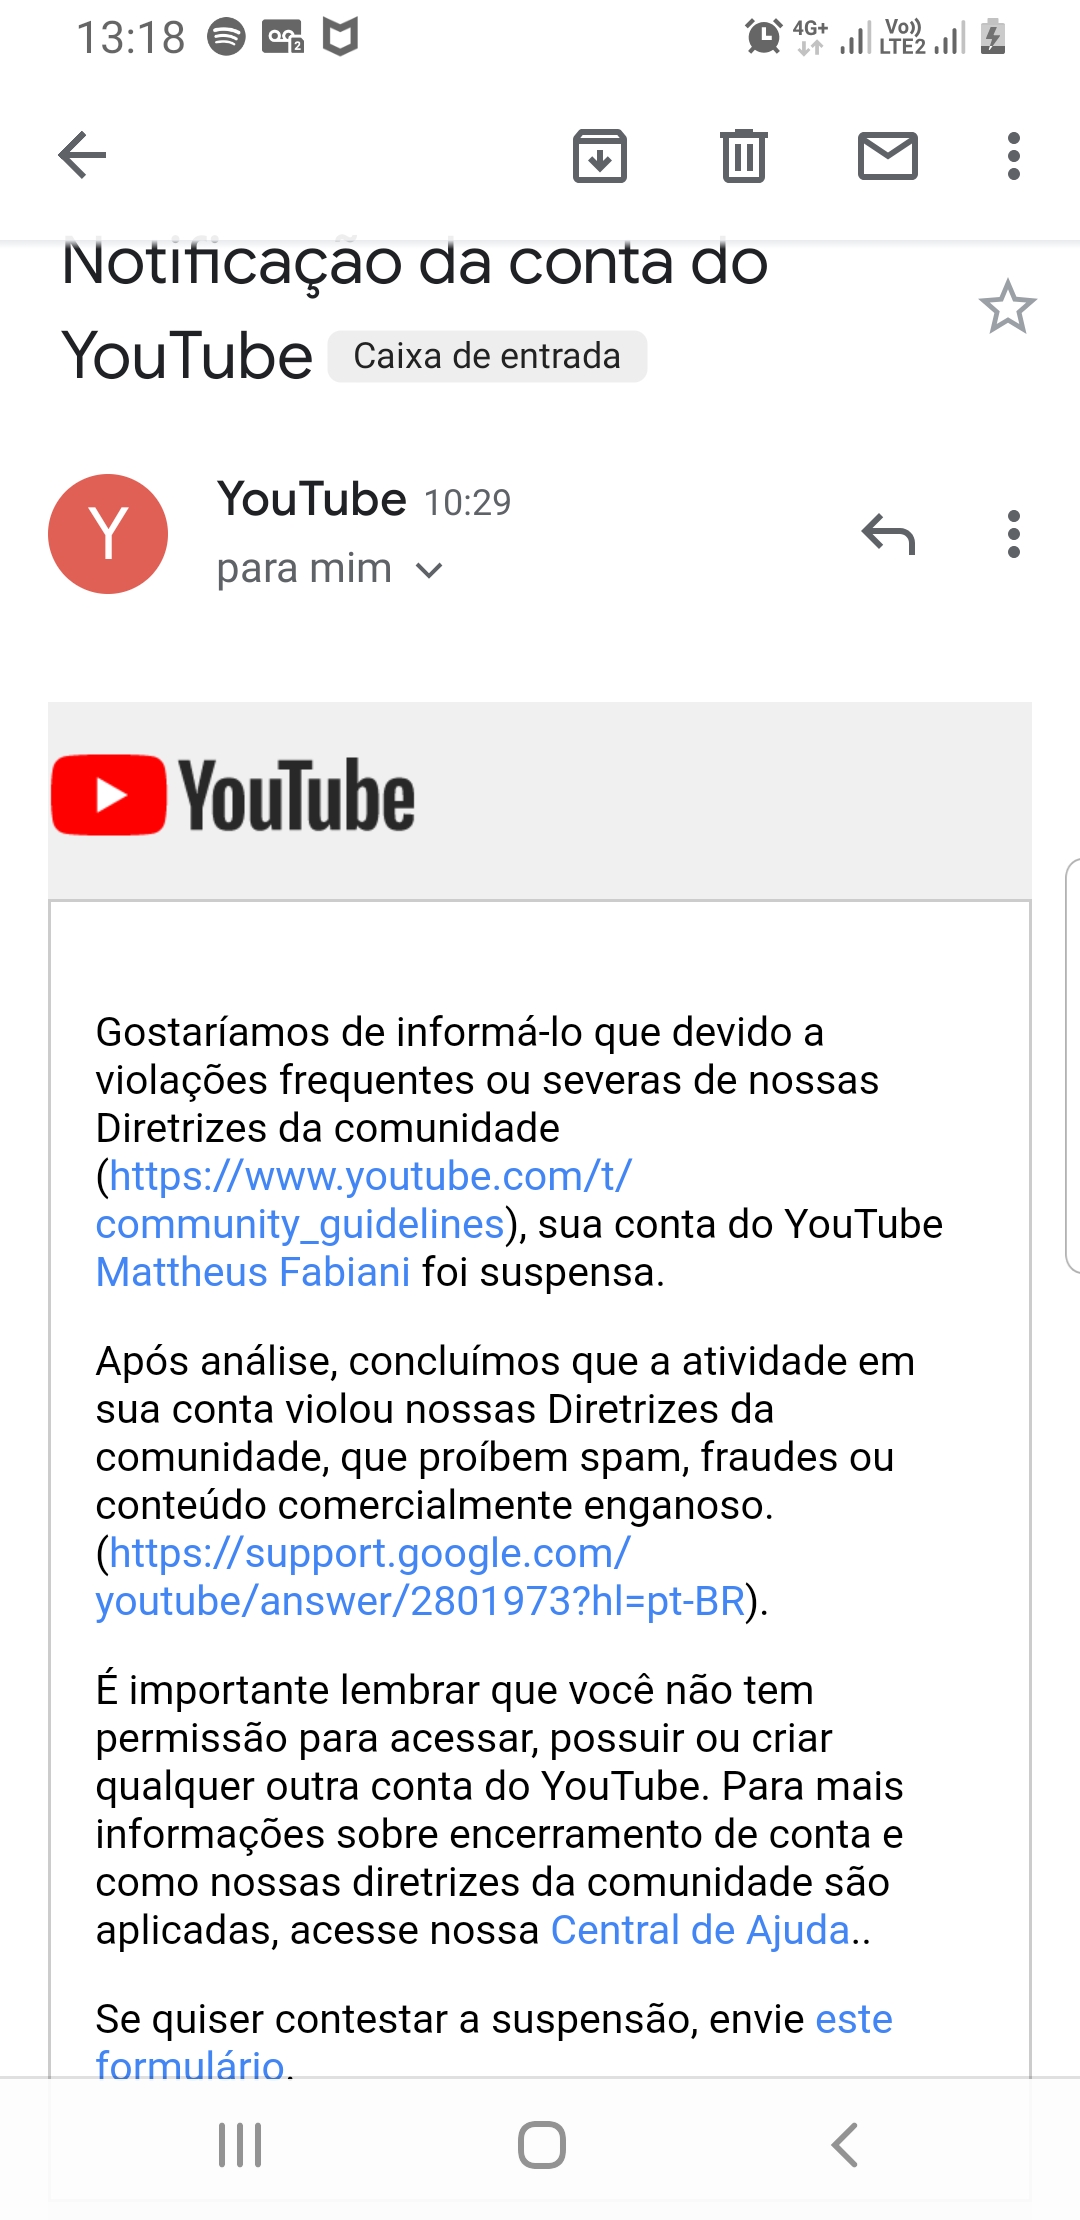 Verifique se sua conta do YouTube não foi suspensa ou encerrada.
Verifique se você possui acesso à conta de e-mail associada à sua conta do YouTube.